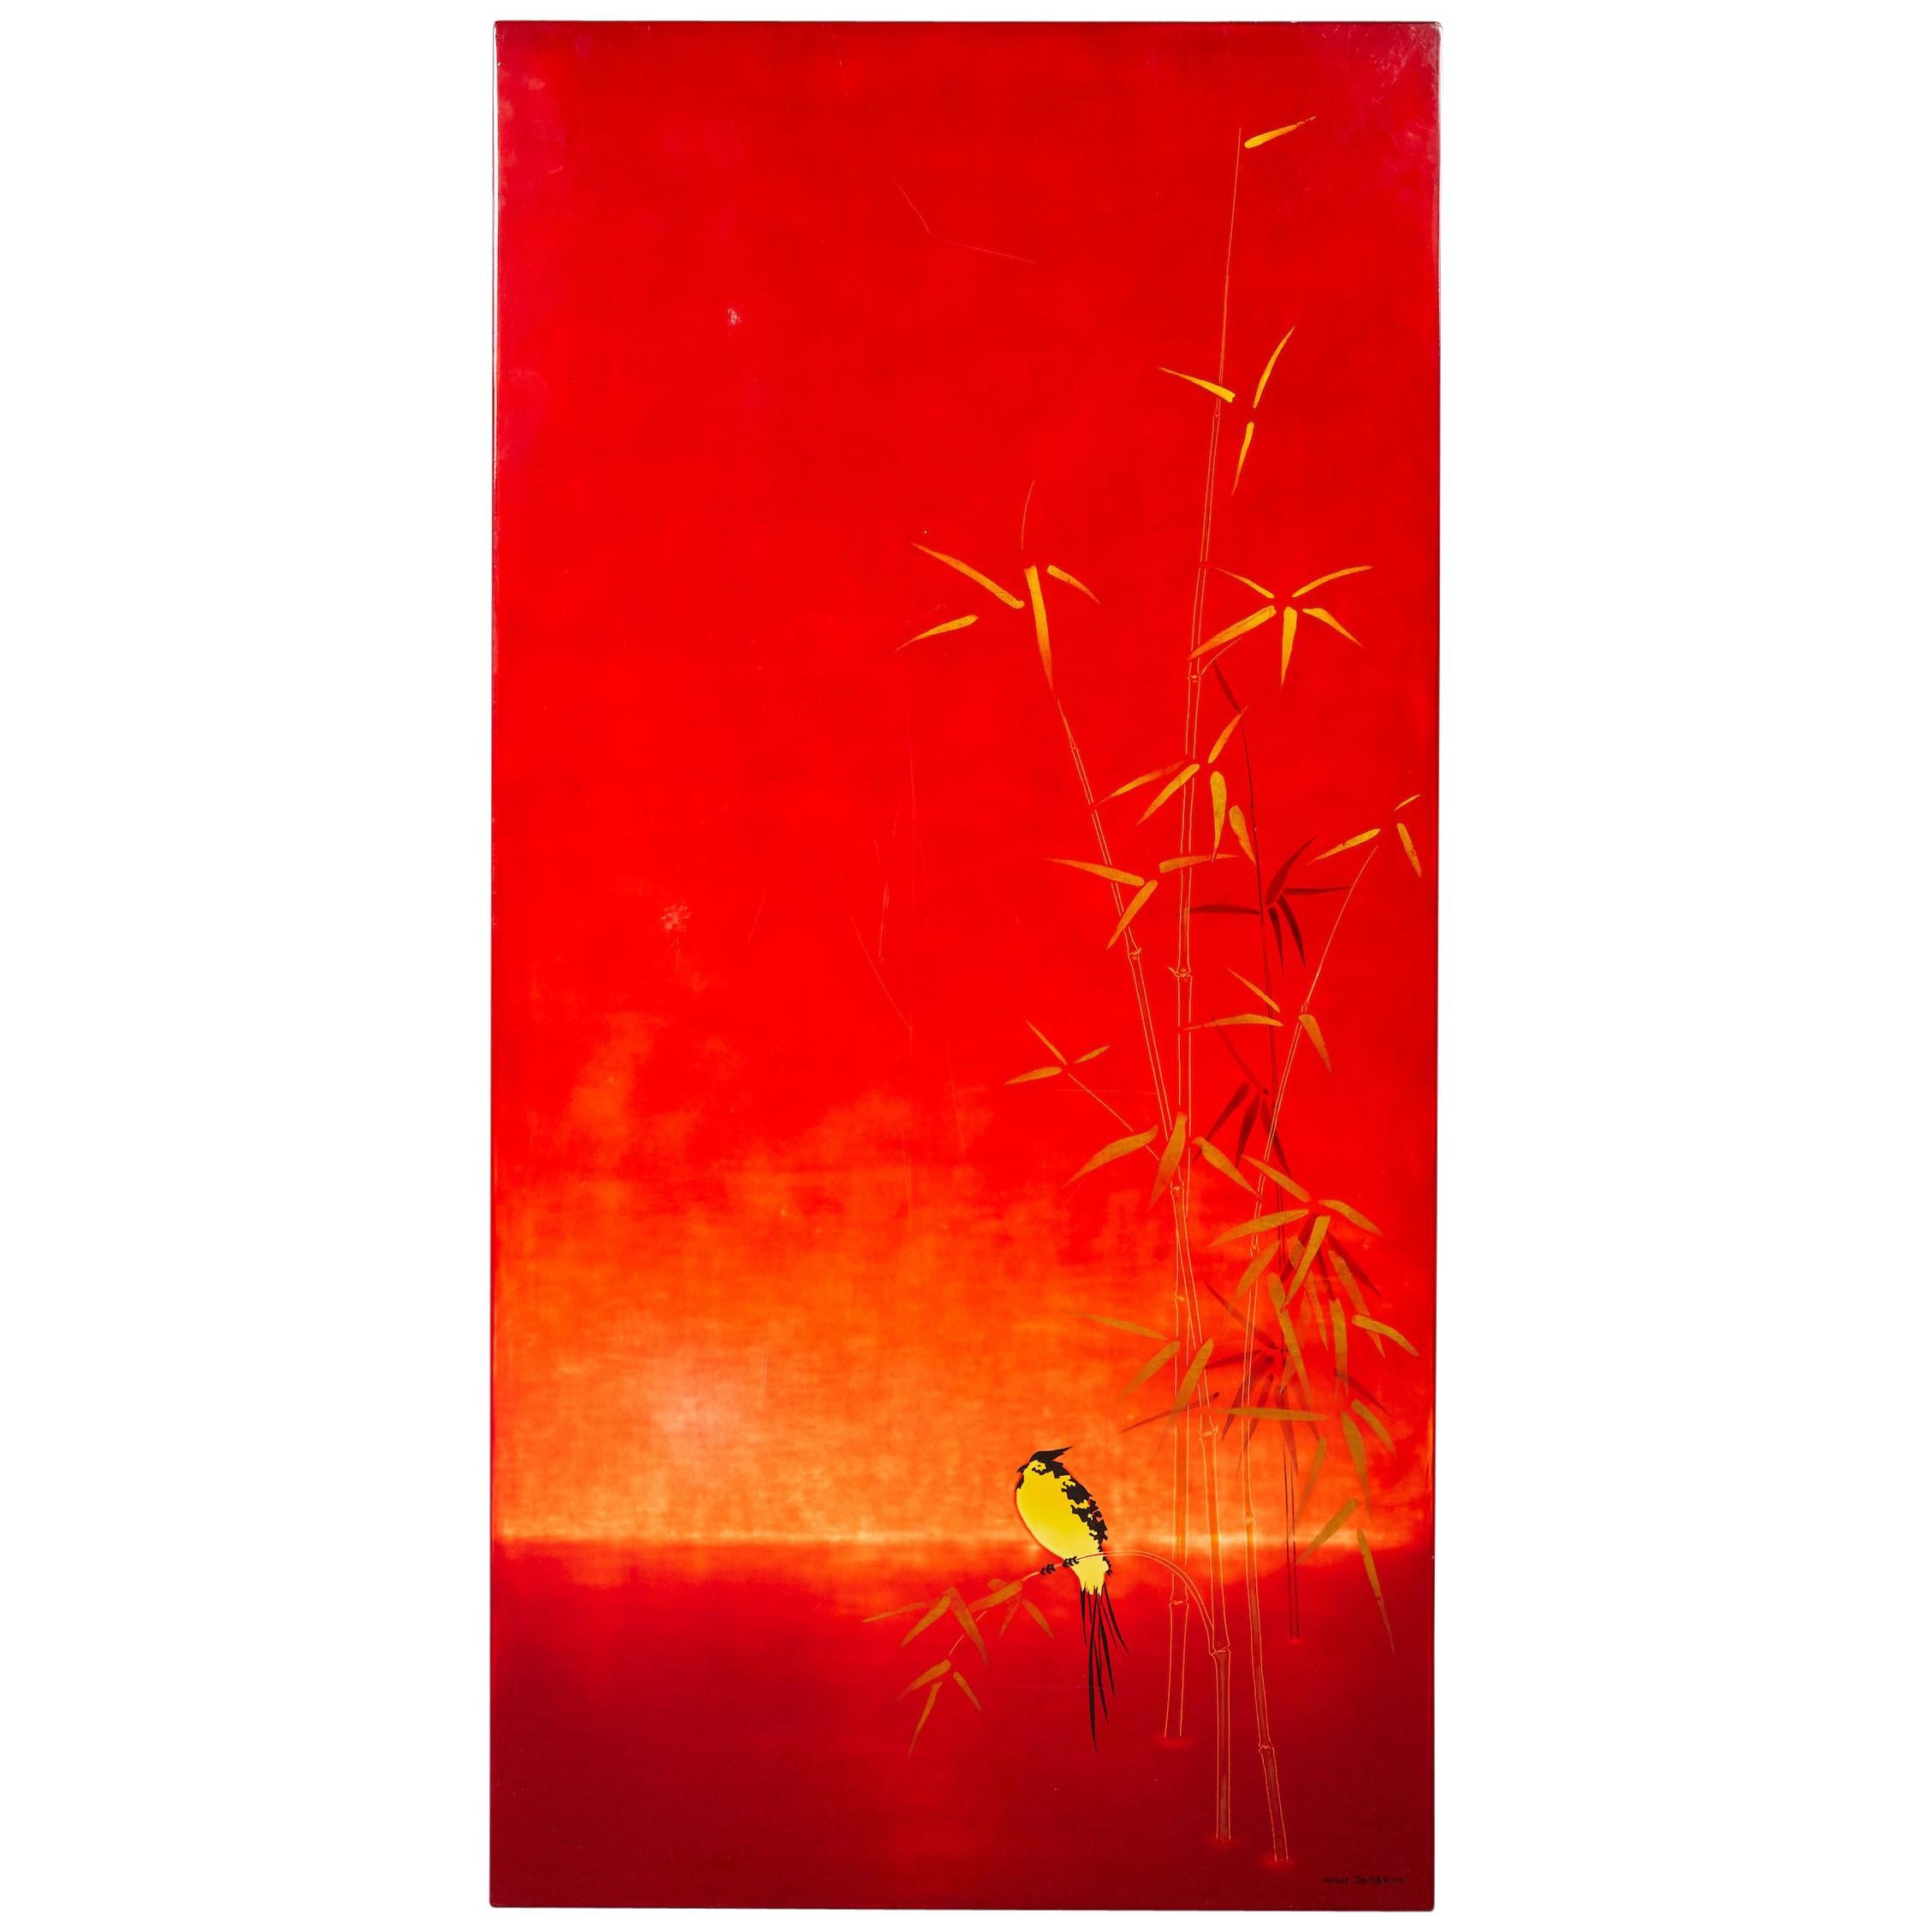  Rot lackierte japanisches Tafelpaneel von Bernard Dunand